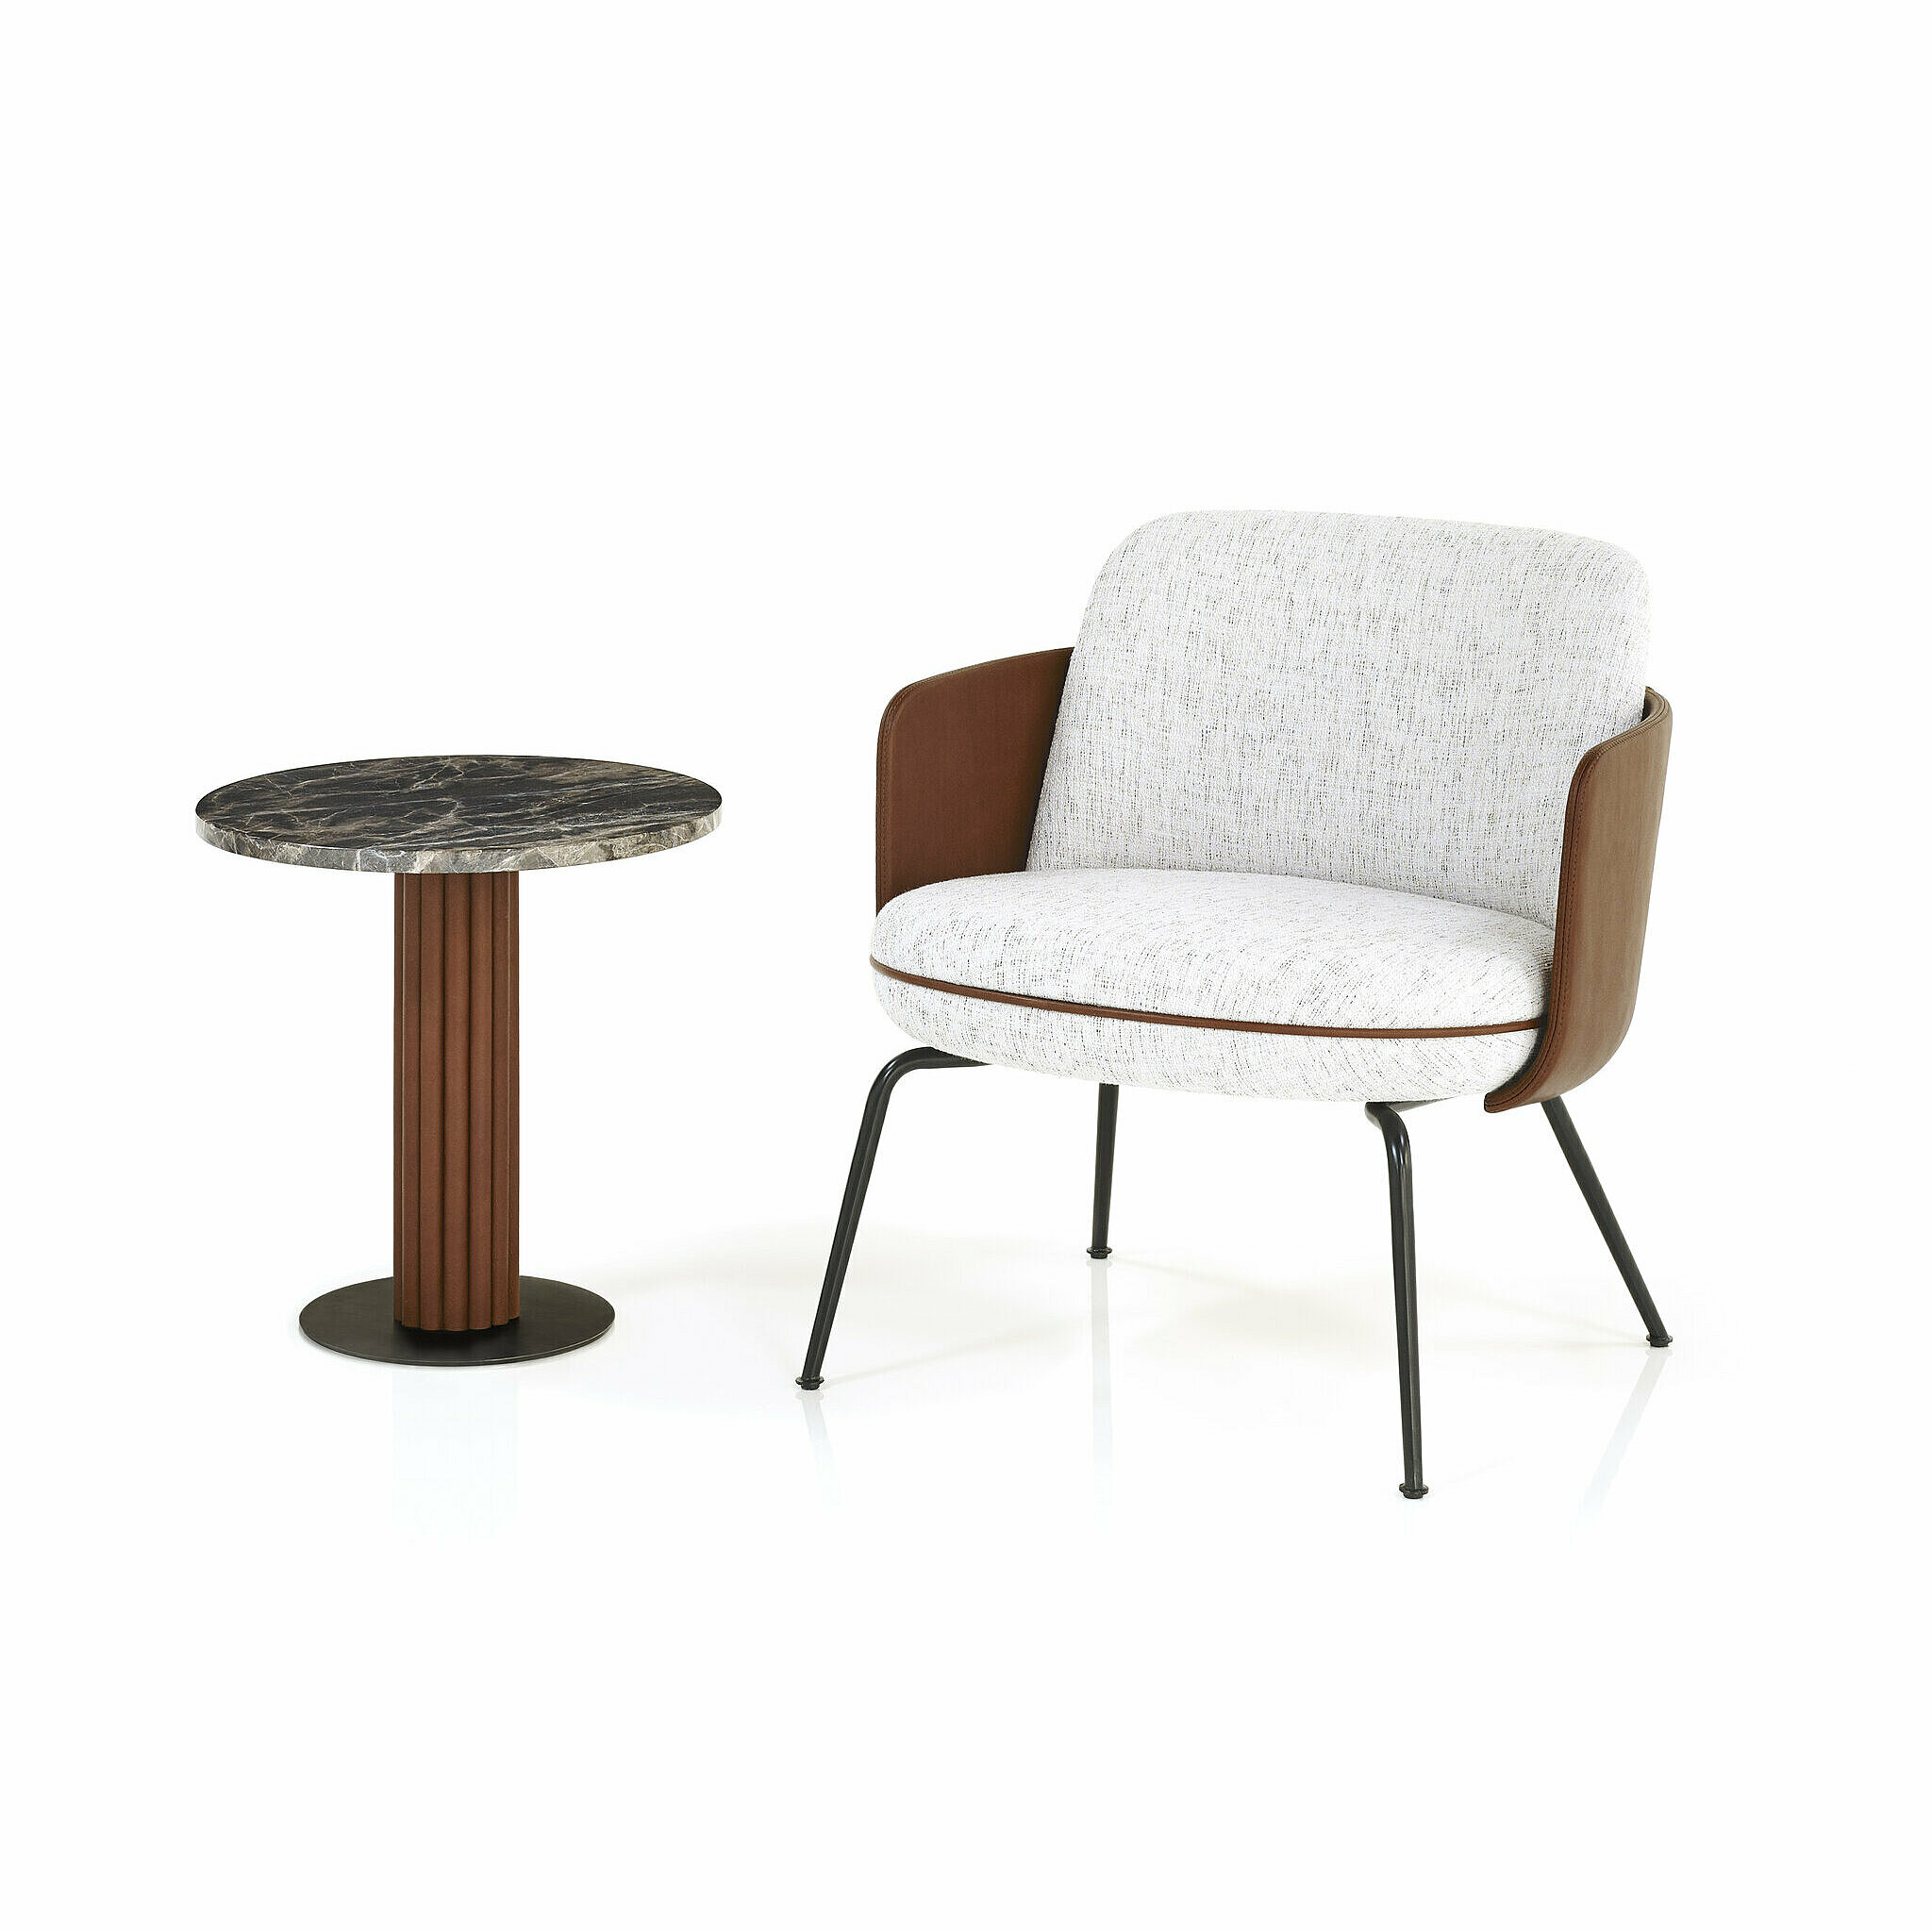 Miles Side Table mit einer Marmorplatte und Tischsäule in brauen Leder, Bodenplatte ist schwarz Pulverbeschichtet, daneben stehend der Merwyn Lounge Fauteuil 